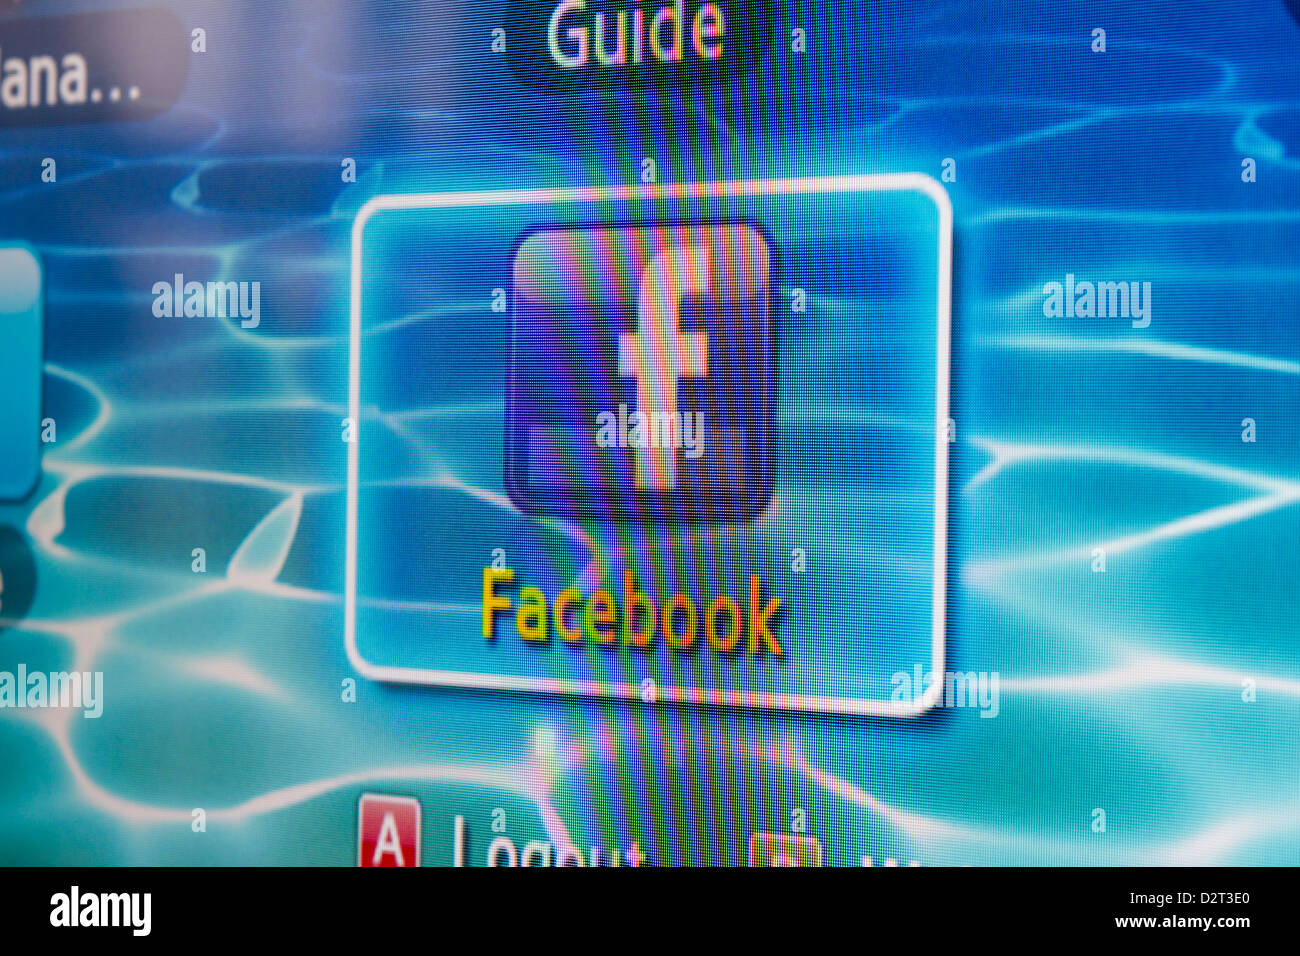 Close-up de Facebook para Samsung TV por Internet hace que sea fácil mantenerse conectado y compartir información con sus amigos desde su televisor. Foto de stock